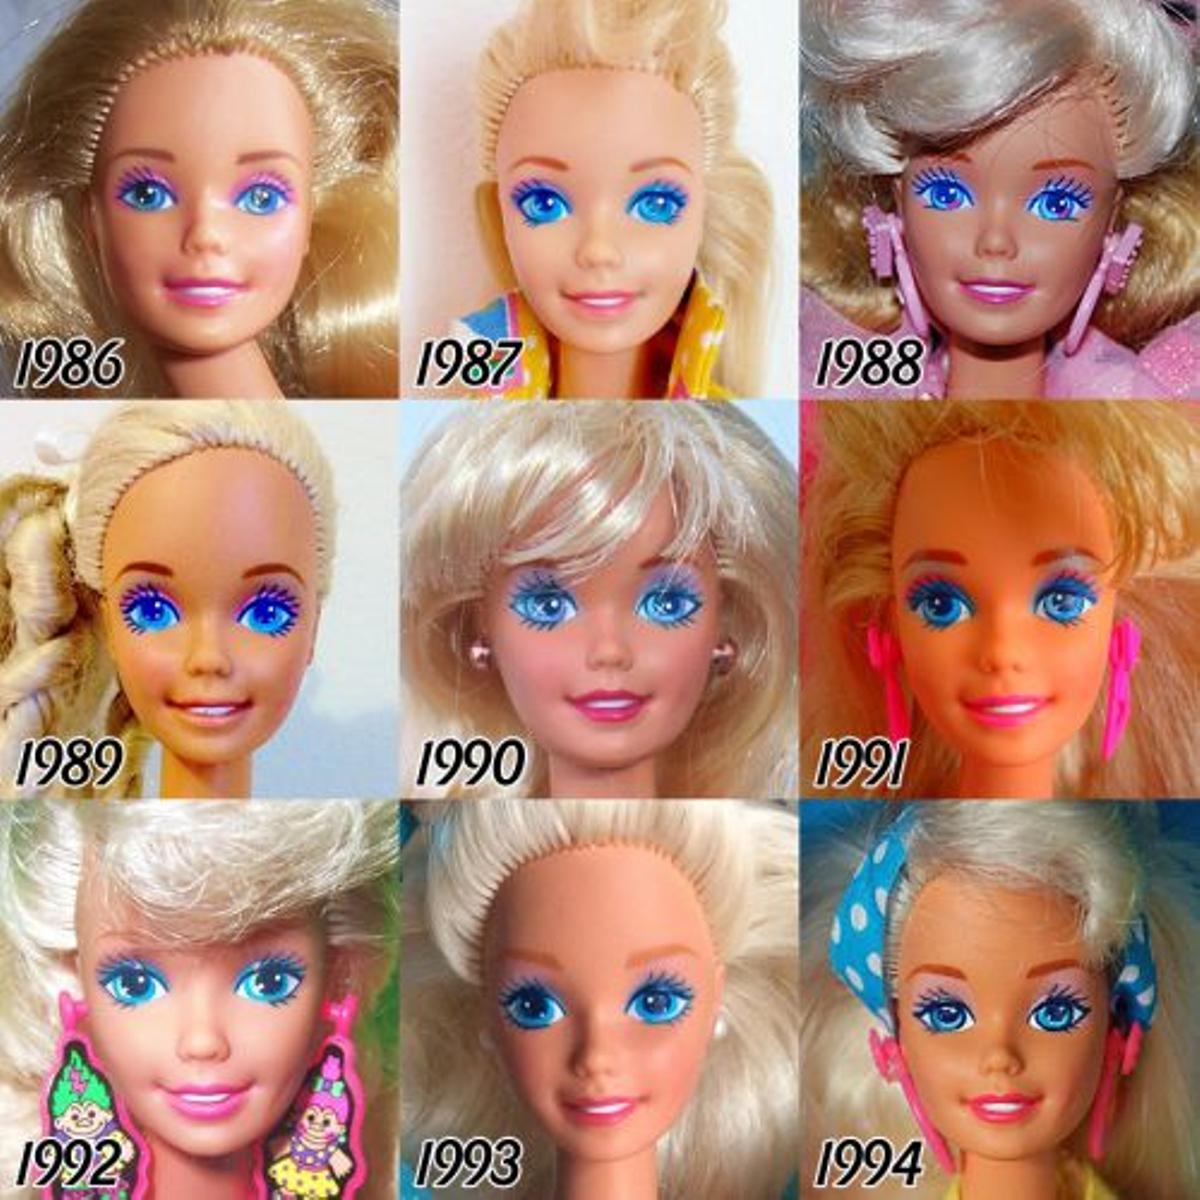 La evolución de Barbie desde 1986 a 1994